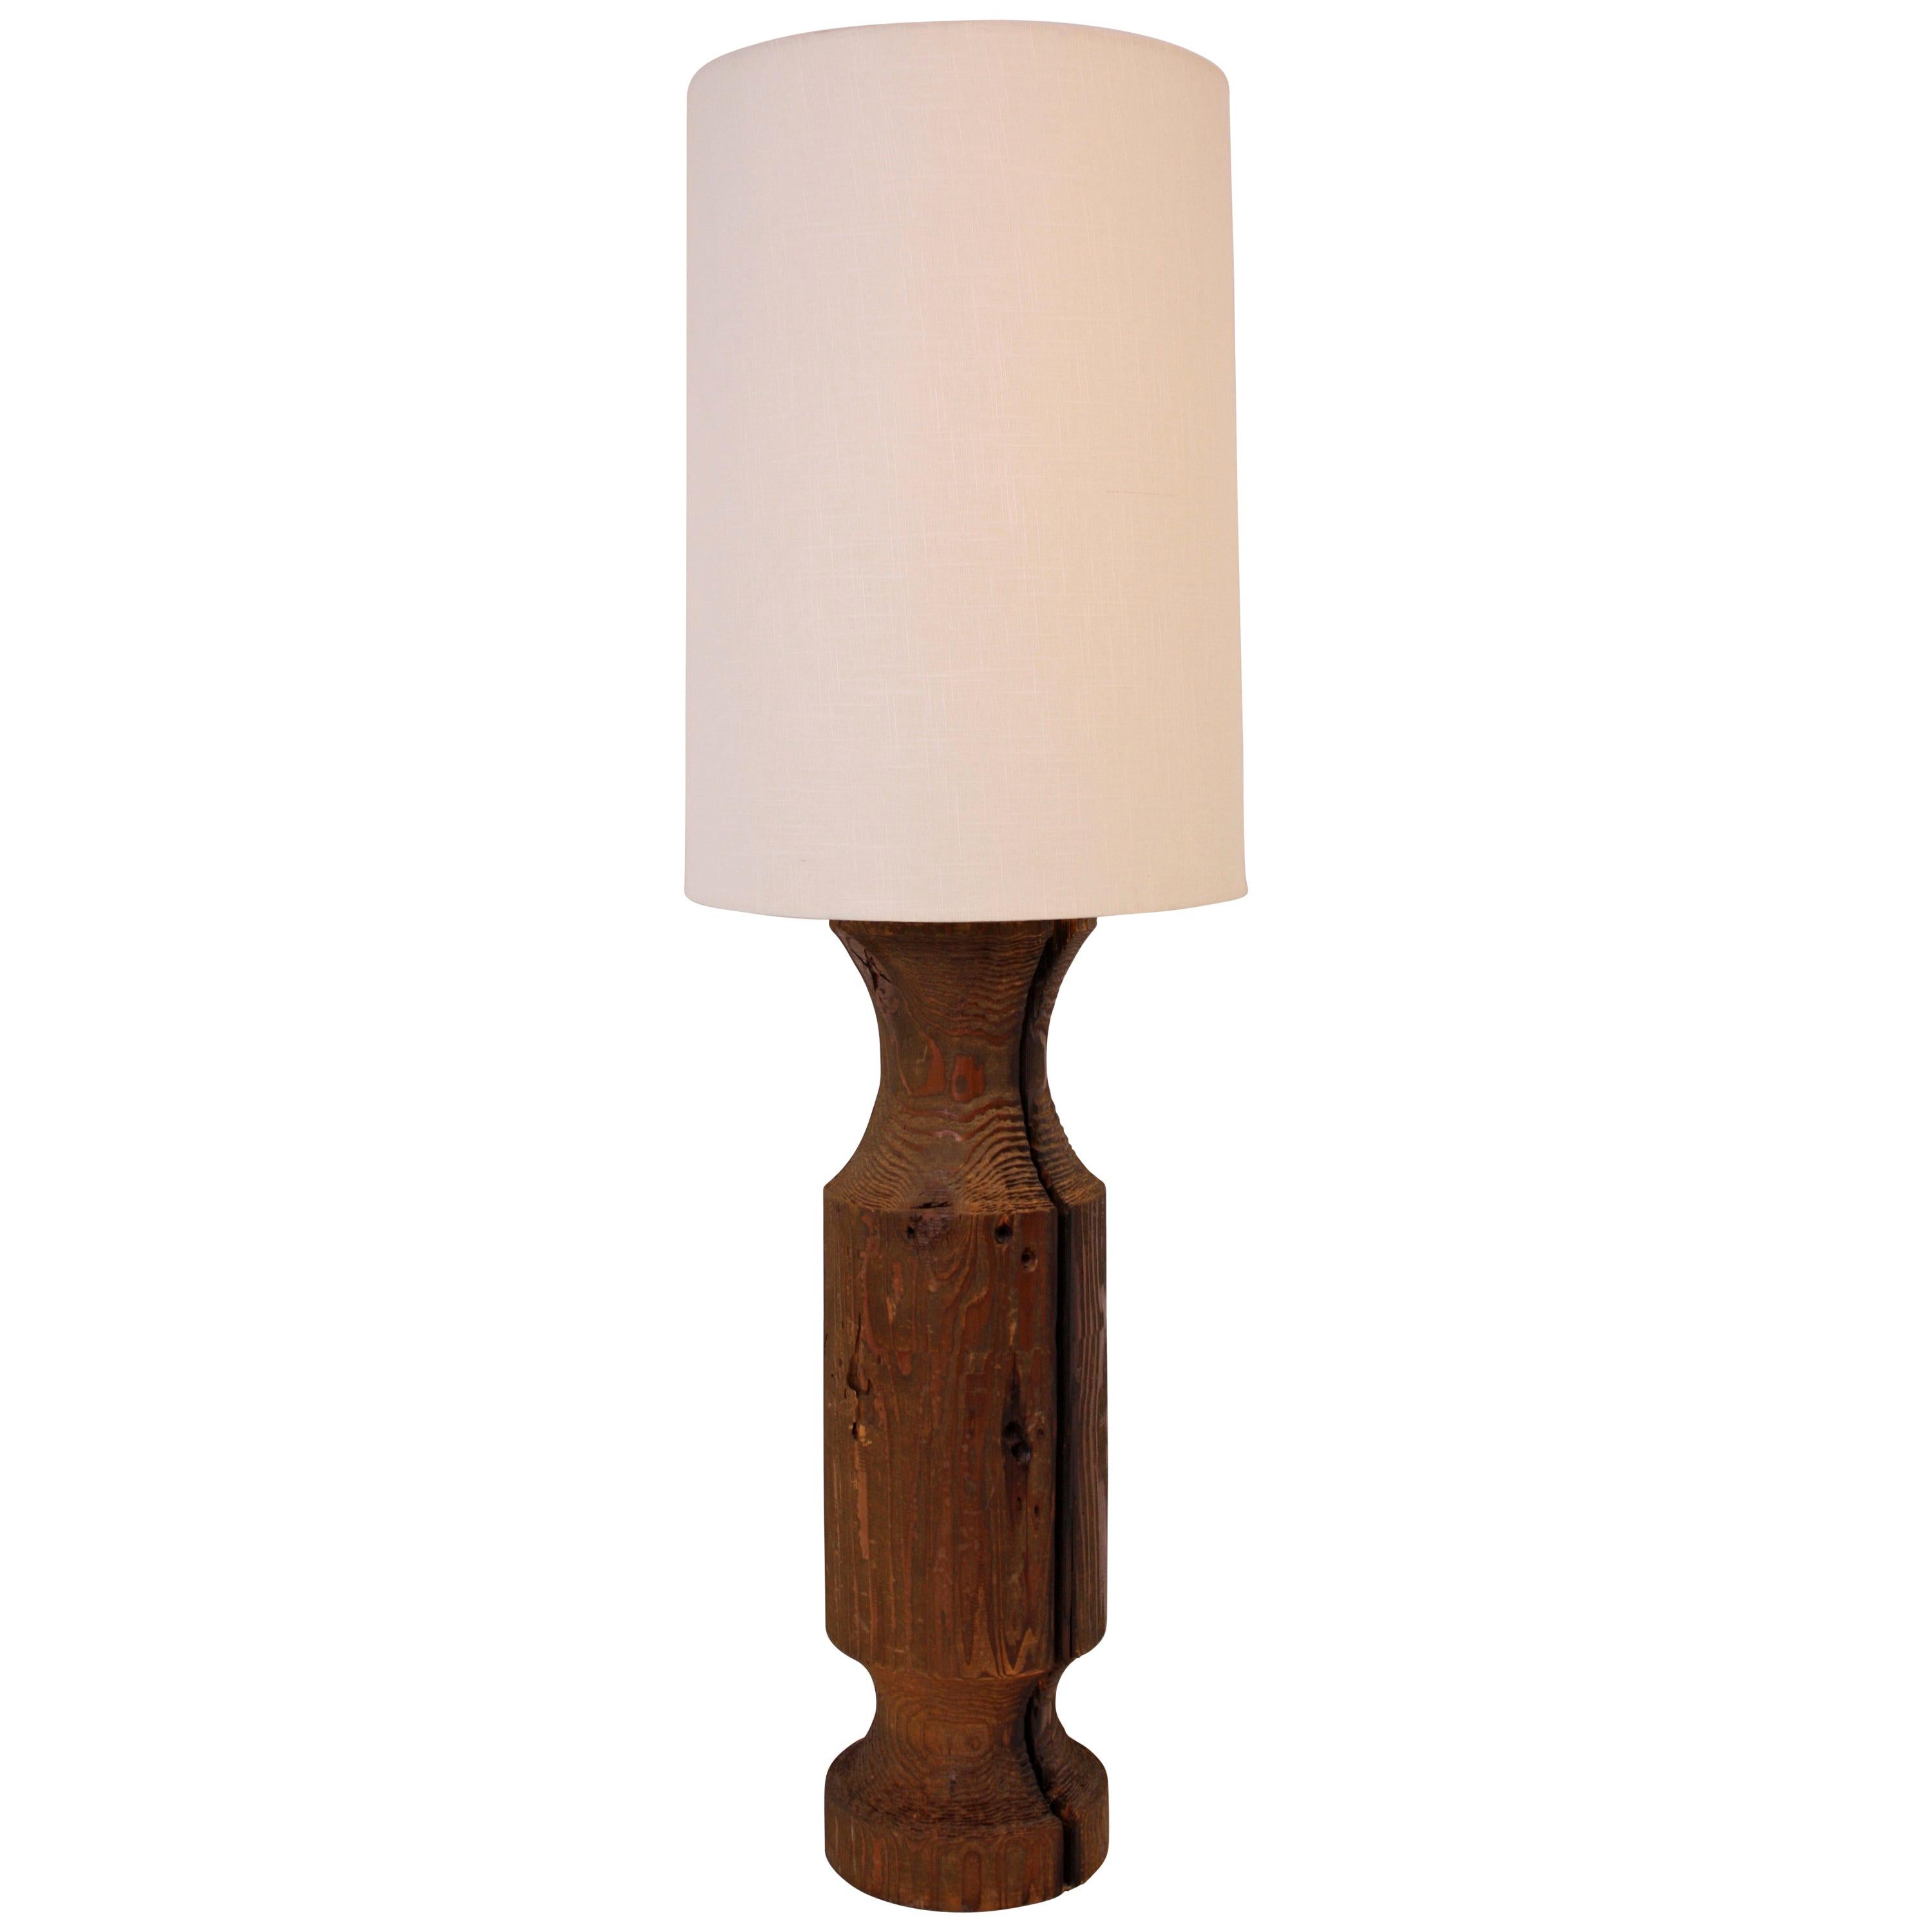 Extra Large Midcentury Turned Wood Lamp